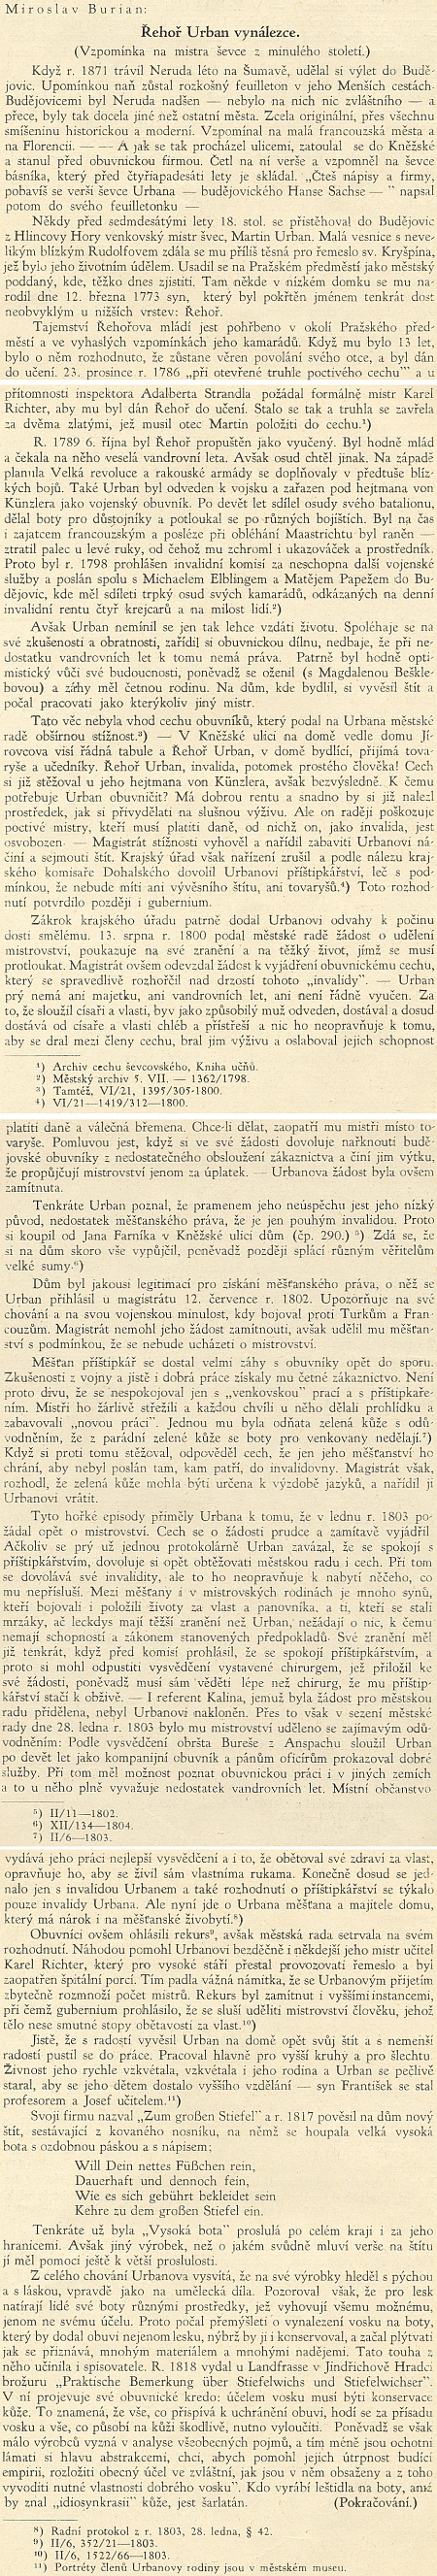 První část nedokončeného článku Miroslava Buriana z posledního sedmého čísla Jihočeského přehledu (1932) věru stojí za čtení přesto, že text zůstal torzem